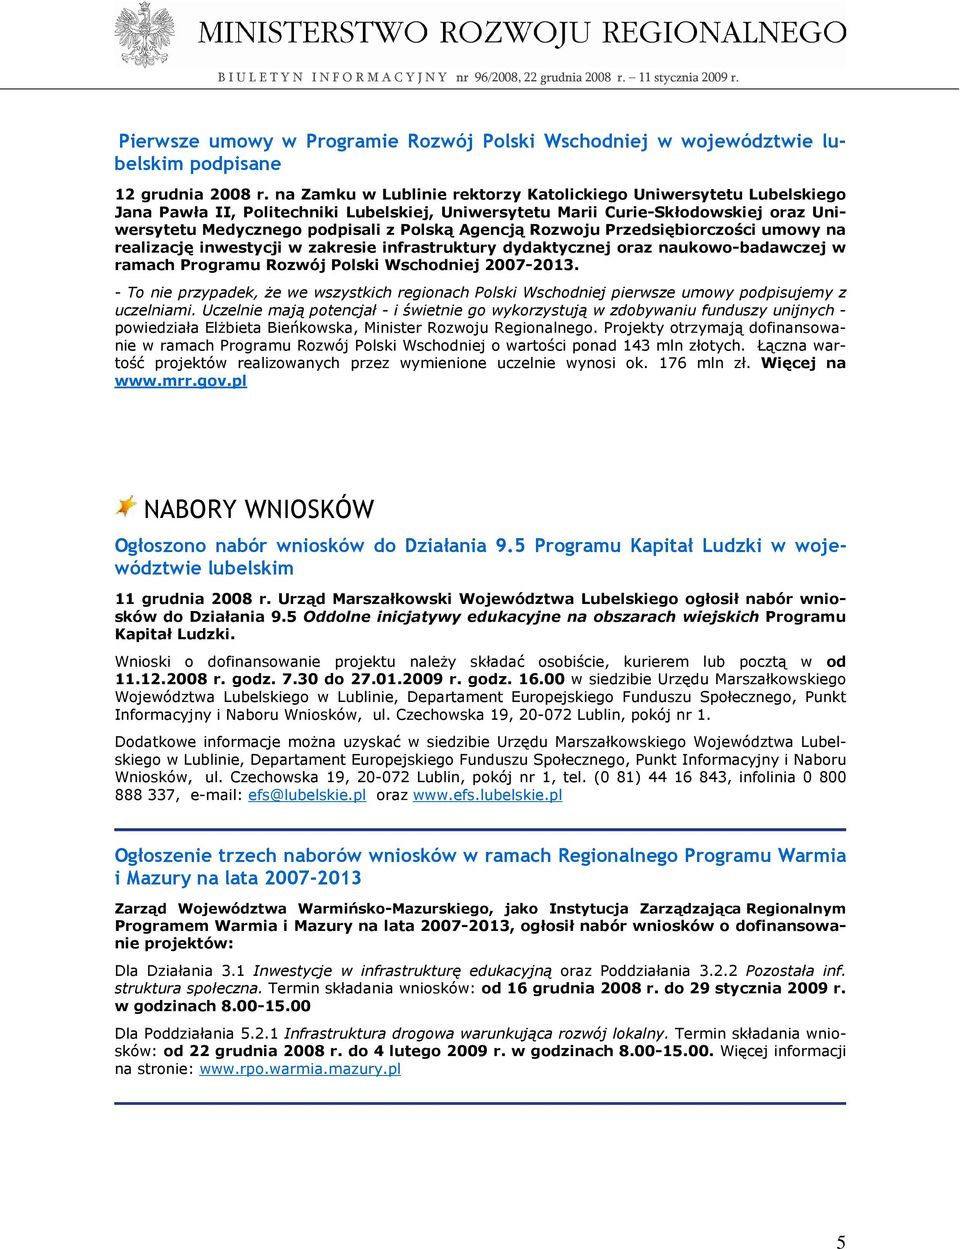 Agencją Rozwoju Przedsiębiorczości umowy na realizację inwestycji w zakresie infrastruktury dydaktycznej oraz naukowo-badawczej w ramach Programu Rozwój Polski Wschodniej 2007-2013.